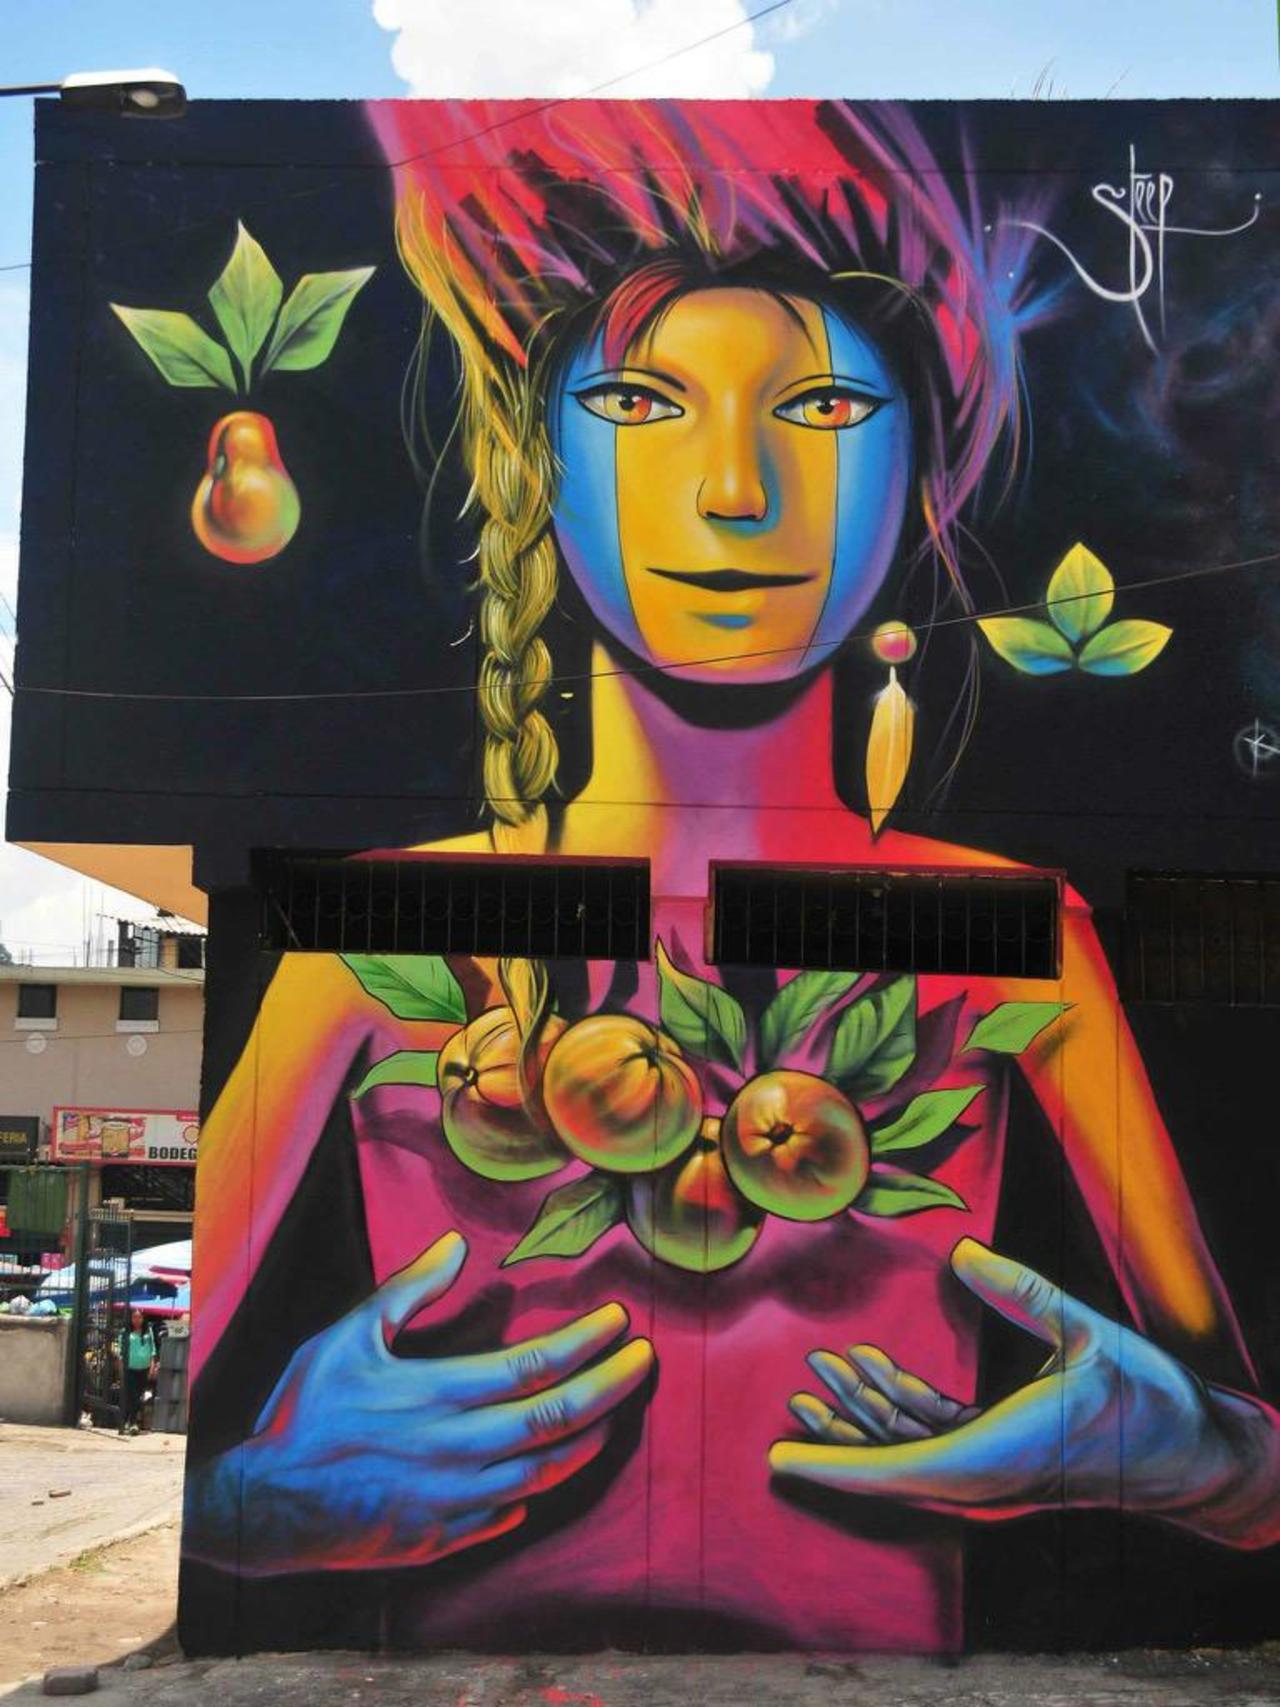 Street Art by Steep

#art #graffiti #mural #streetart http://t.co/hUc1oWBcLE